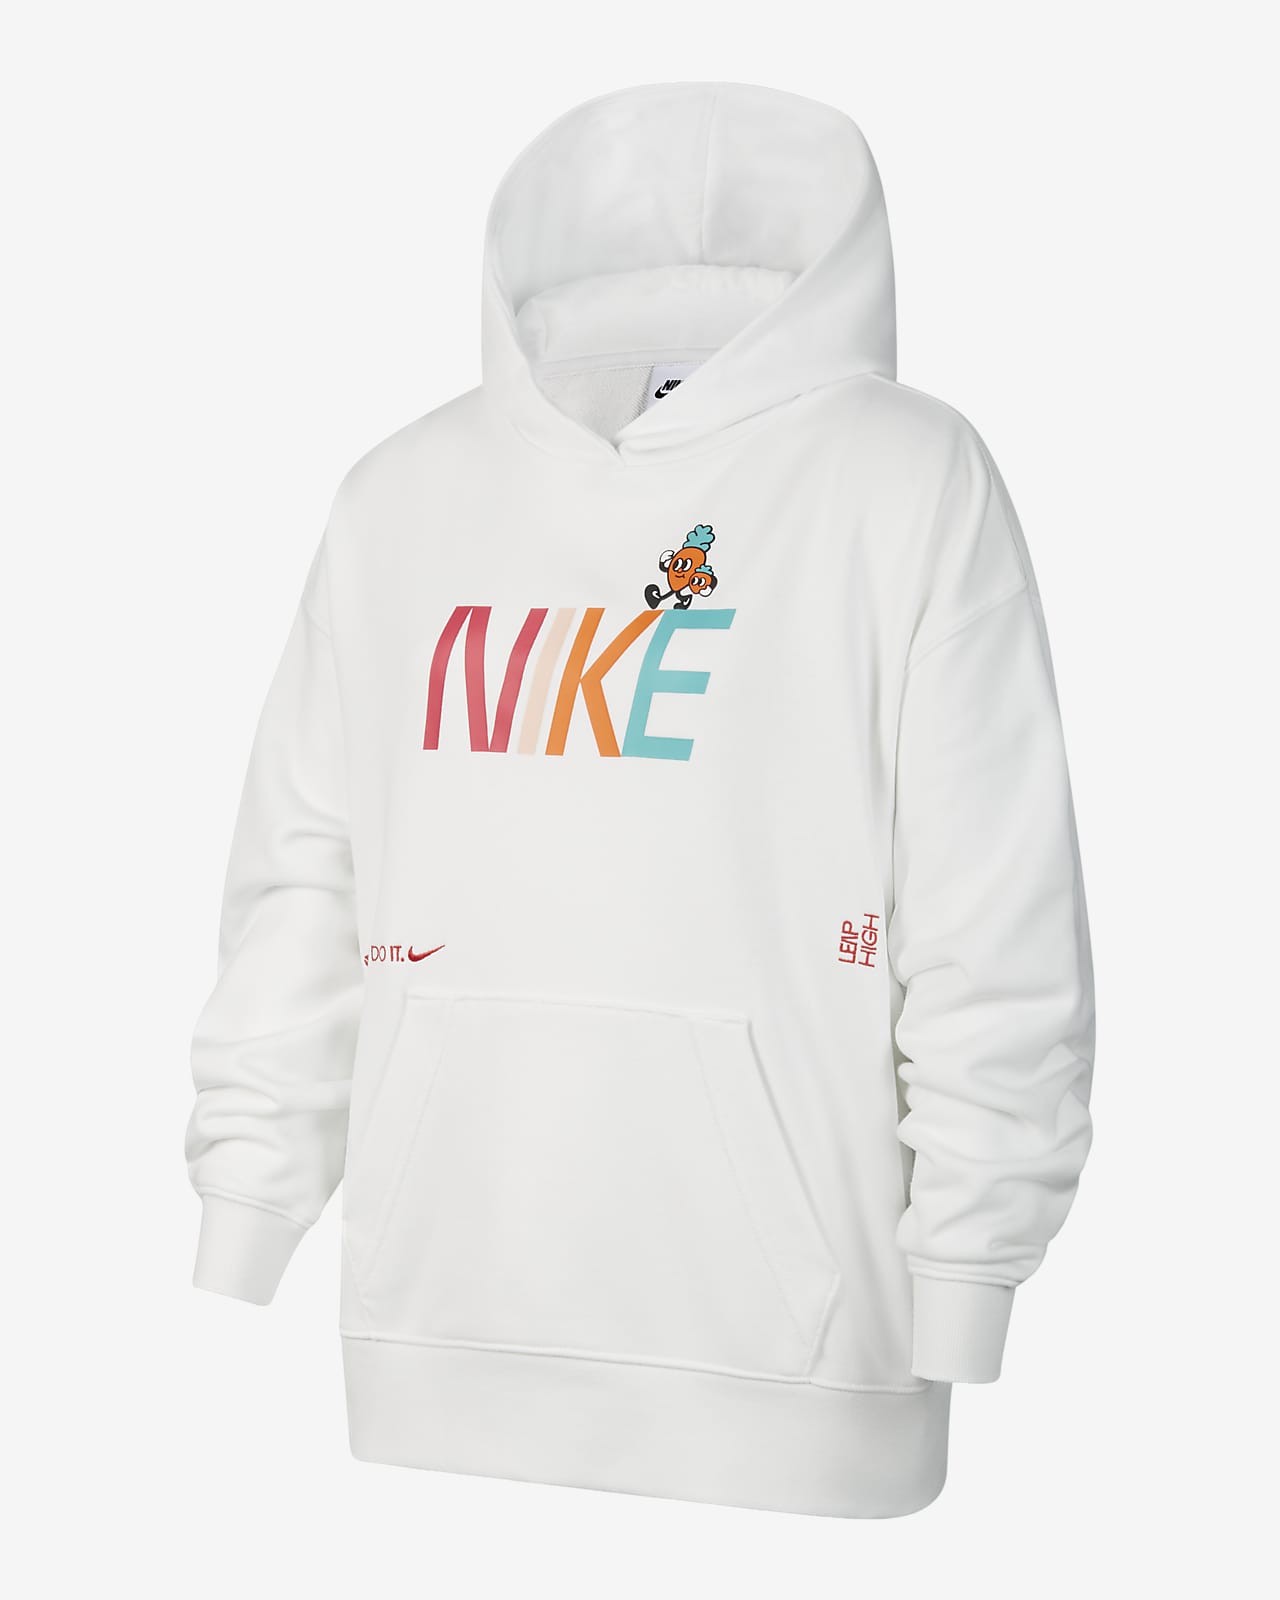 Flísová mikina s kapucí Nike Sportswear pro větší děti